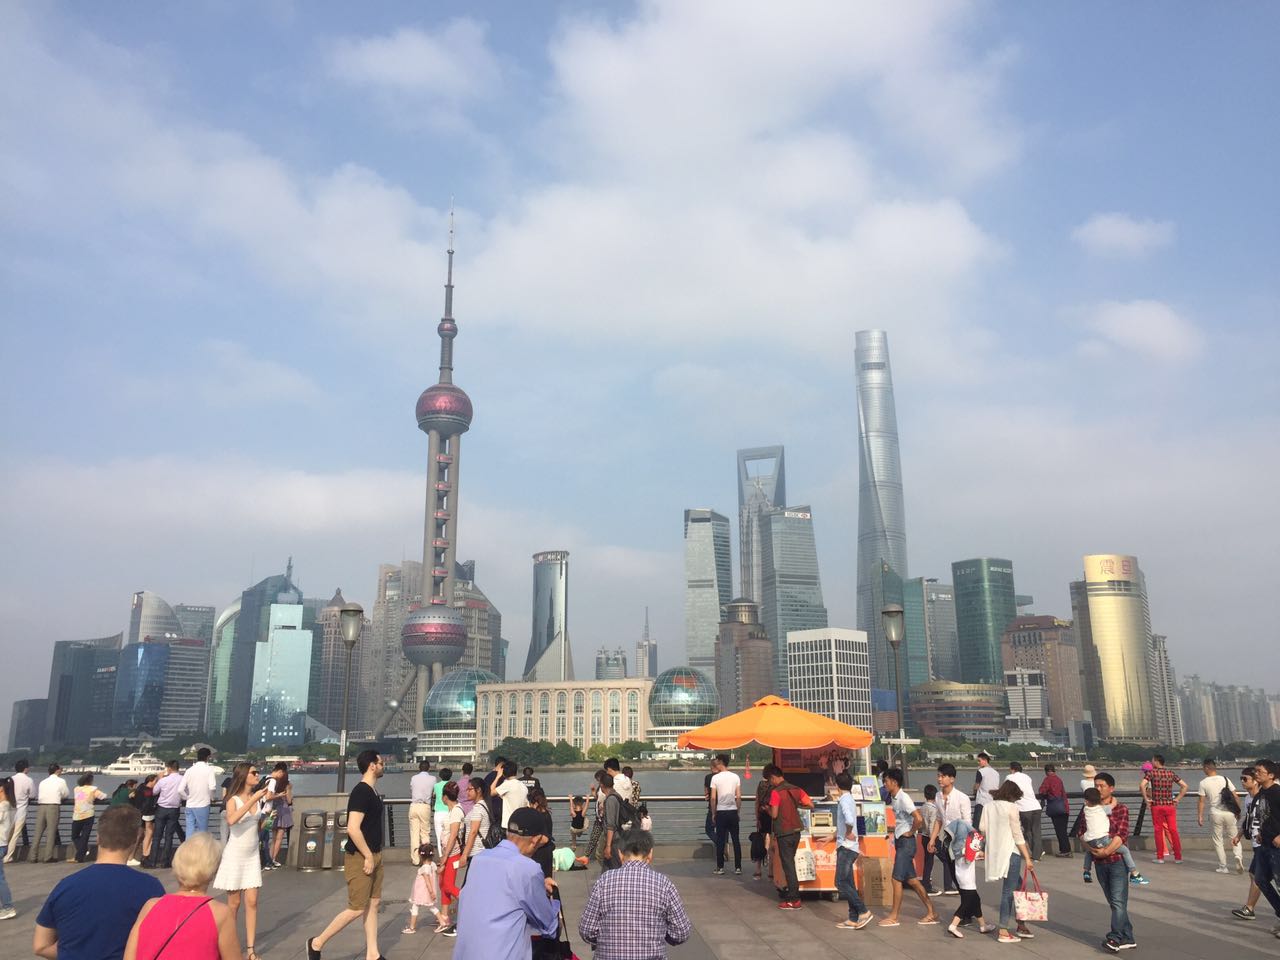 Arriving in Shanghai